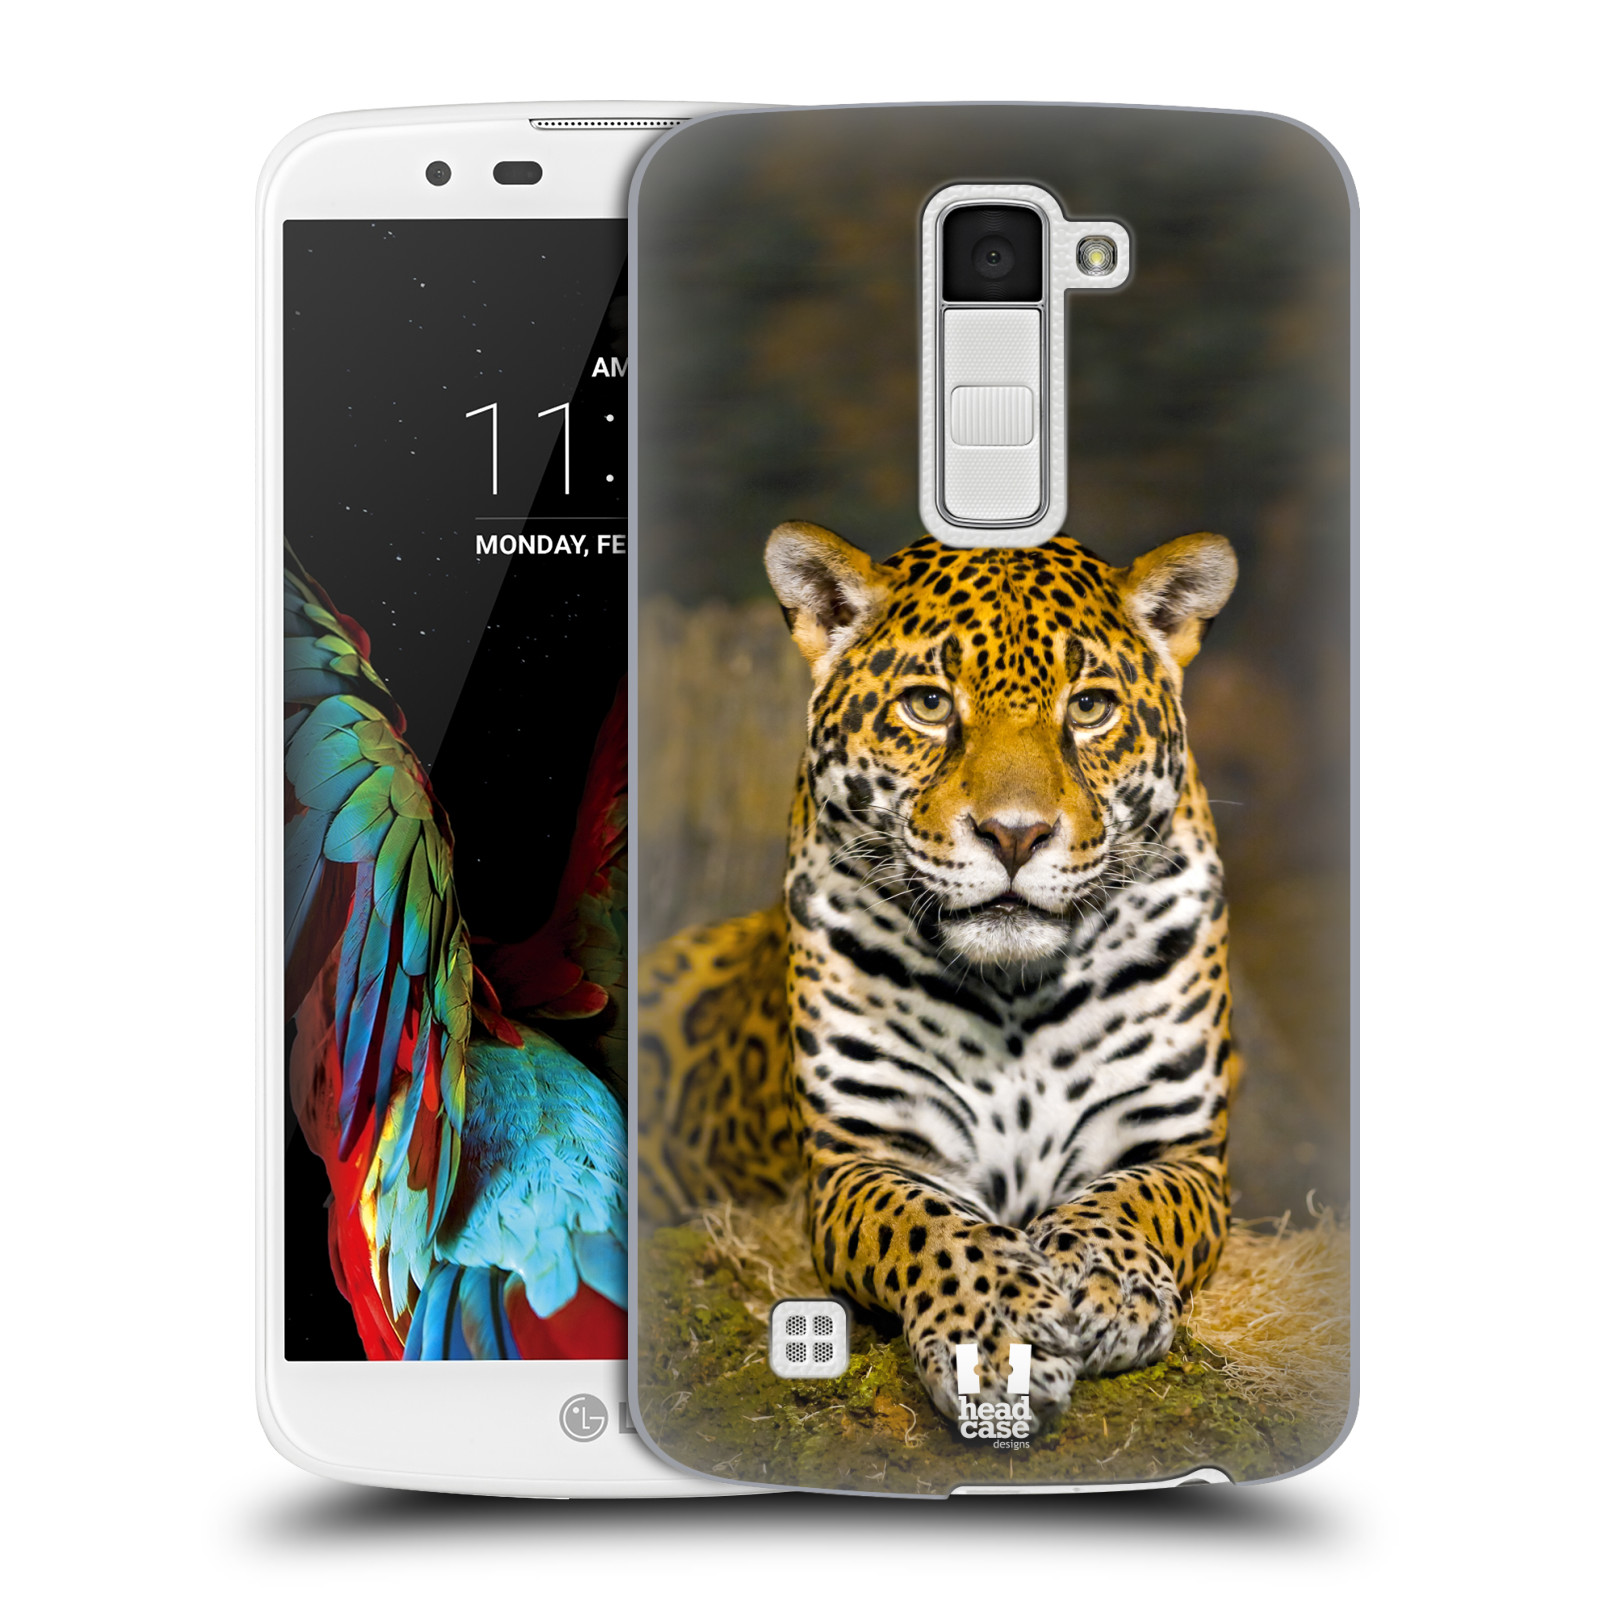 HEAD CASE plastový obal na mobil LG K10 vzor slavná zvířata foto jaguár